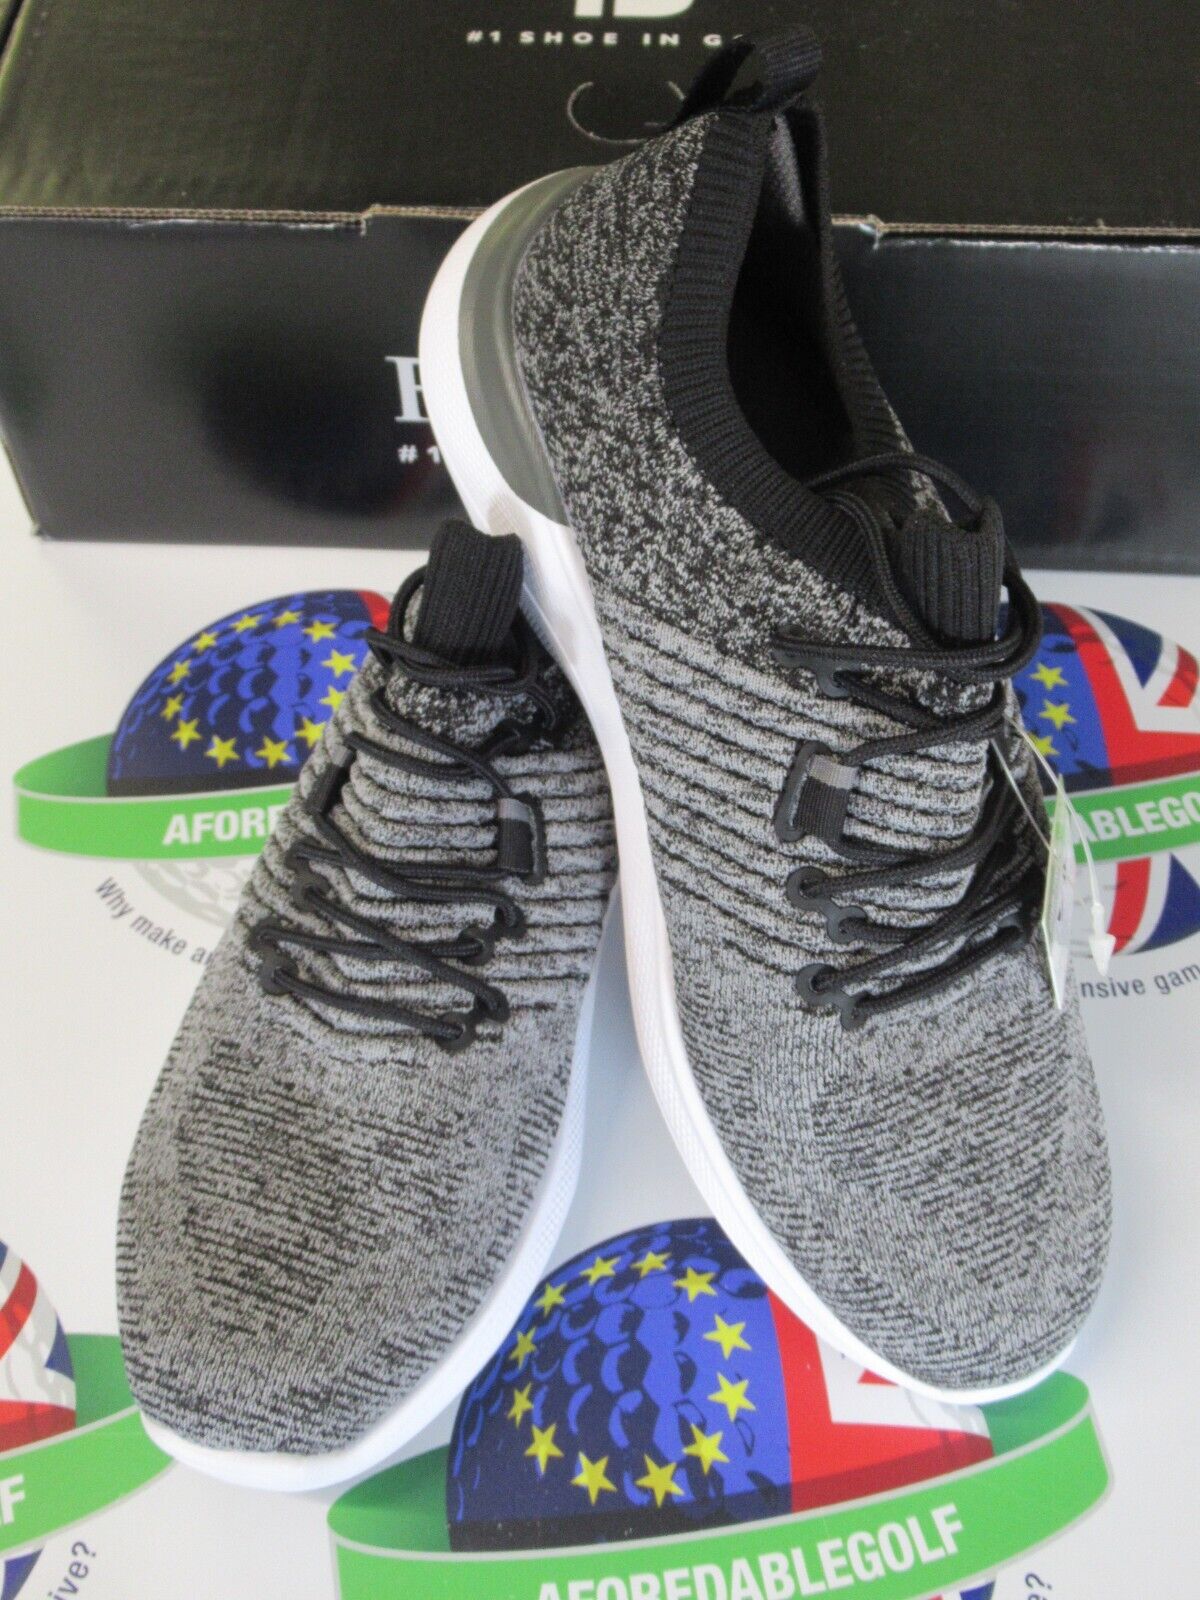 footjoy flex xp womens golf shoes black/grey 95336k uk size 4.5 medium